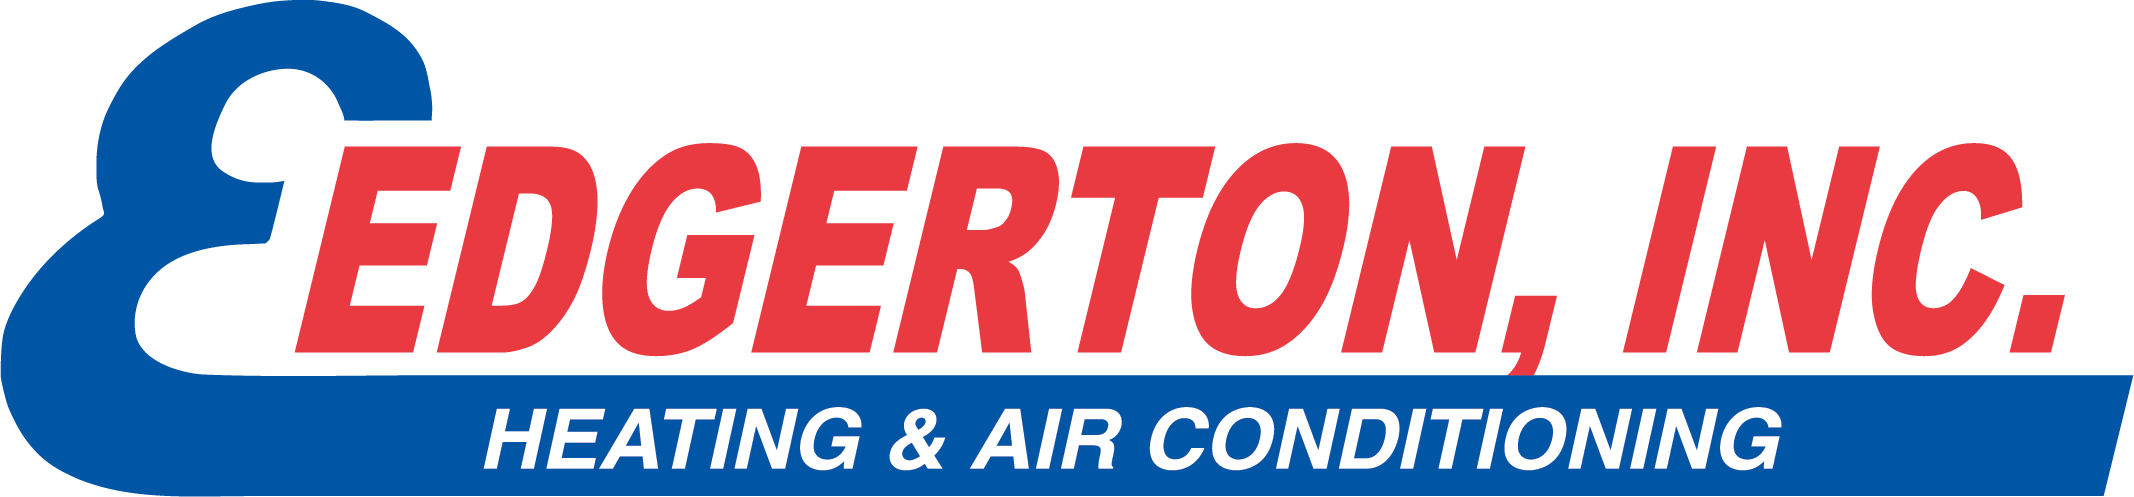 Edgerton, Inc logo